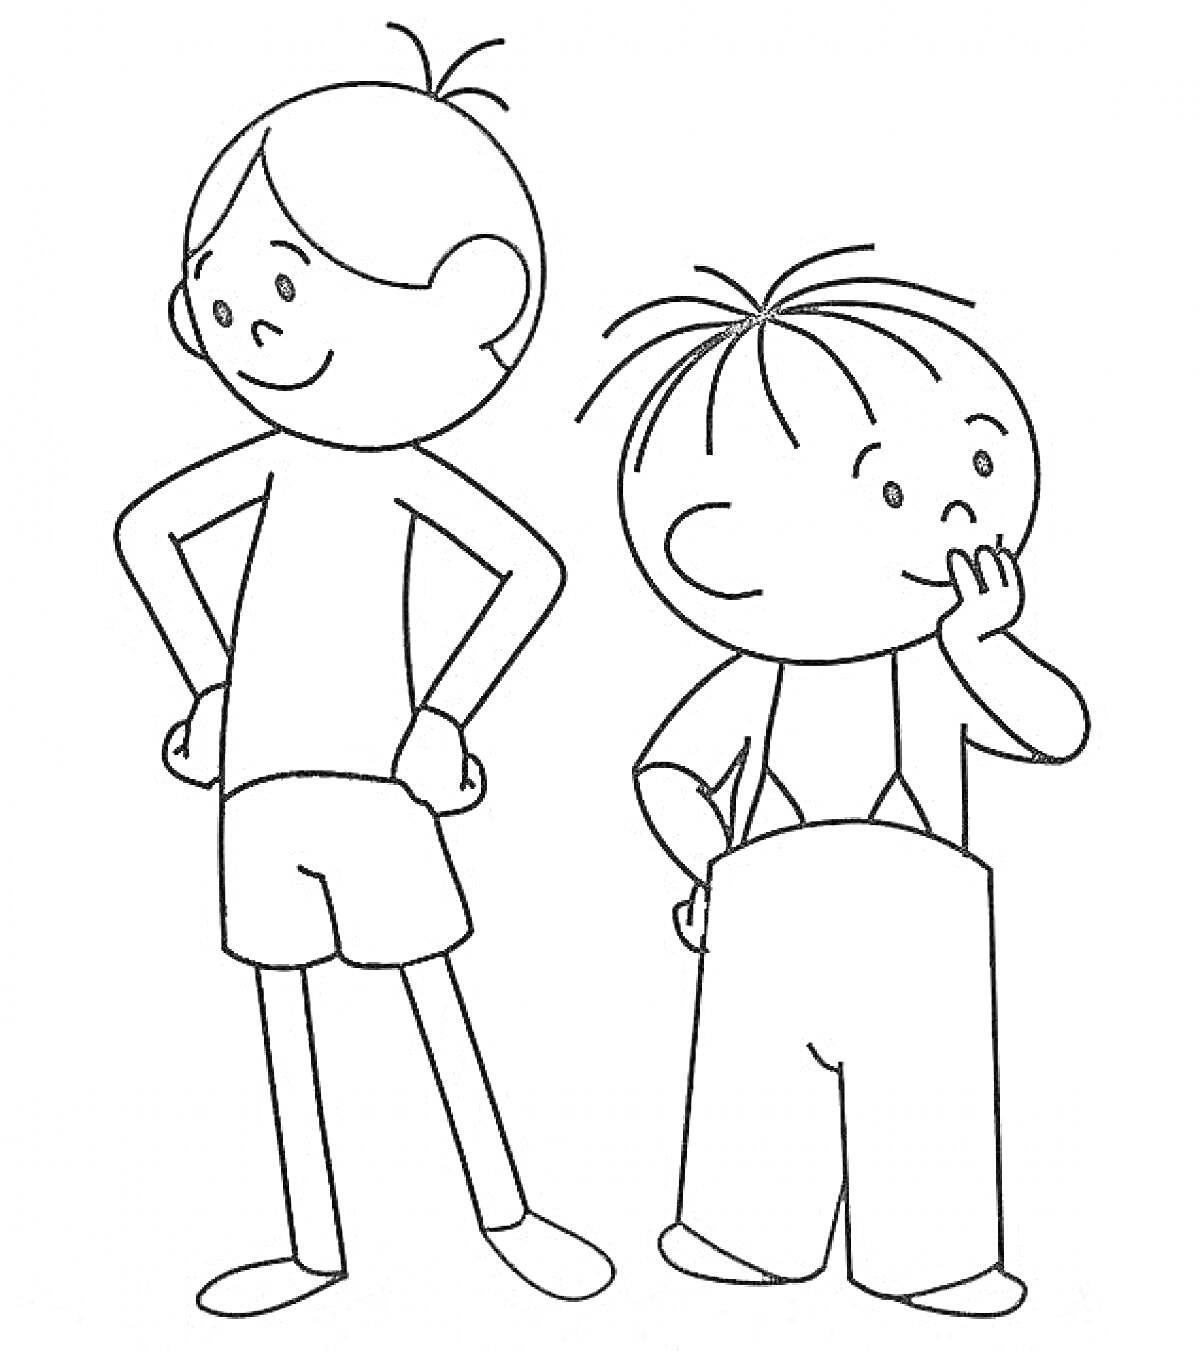 Раскраска Лелик и Болик, два персонажа, Лелик в шортах, Болик в штанах с лямками